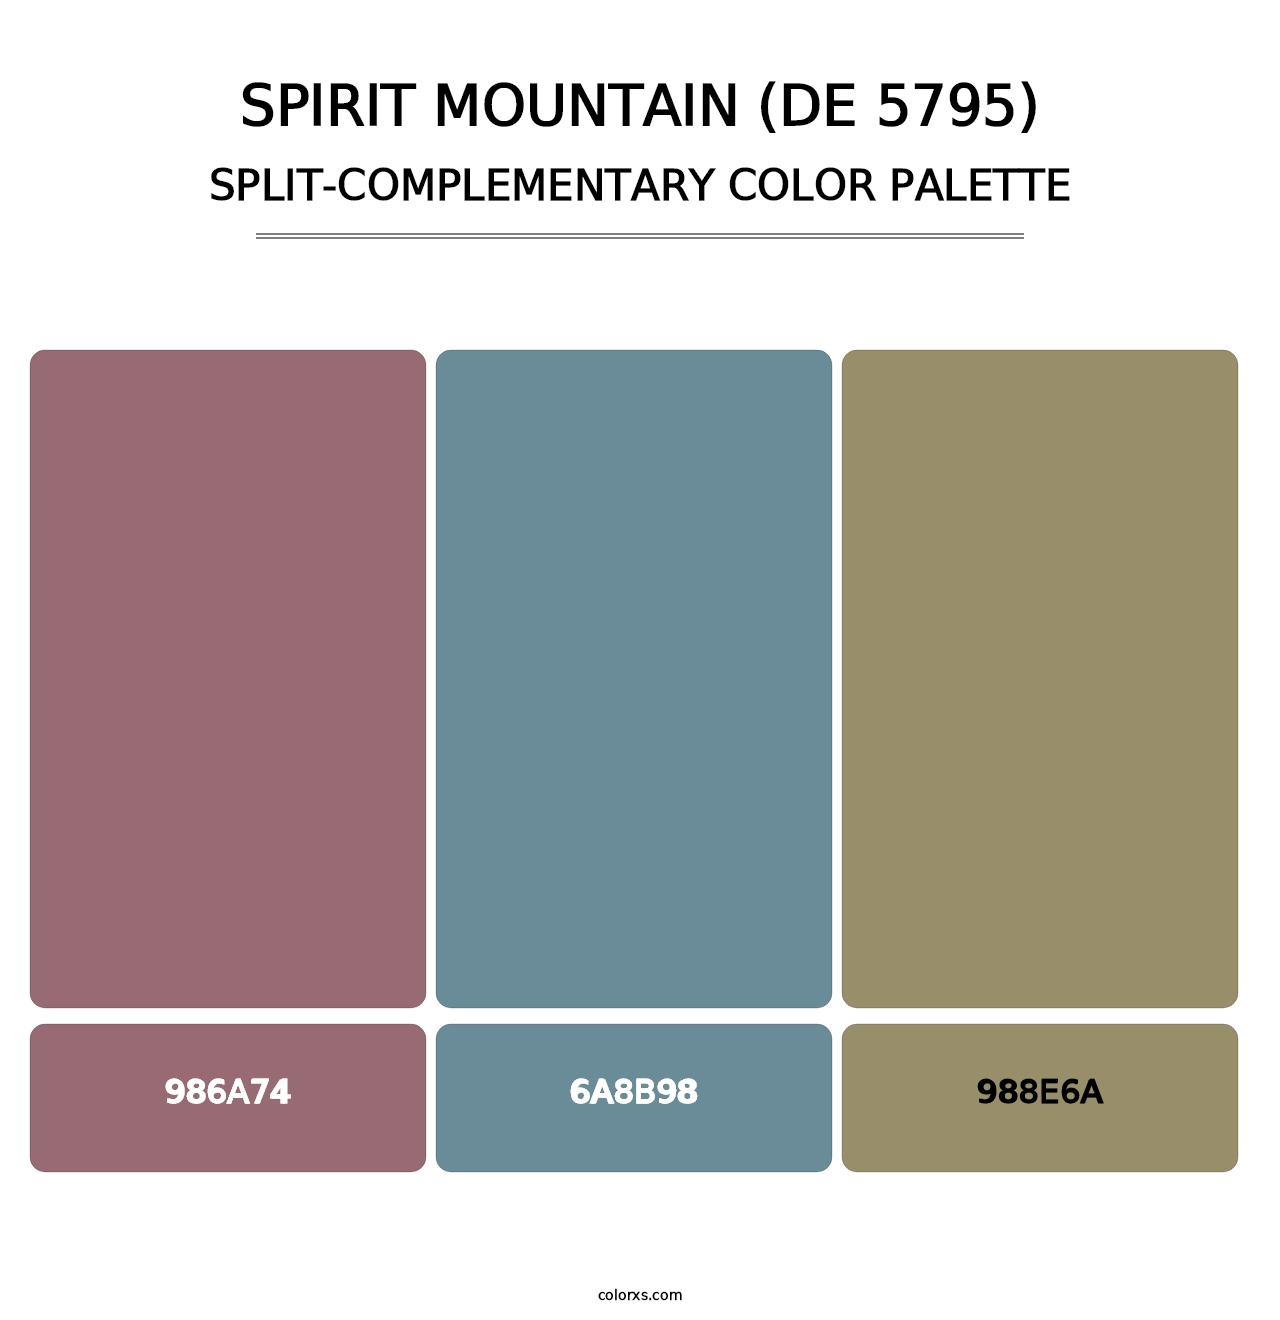 Spirit Mountain (DE 5795) - Split-Complementary Color Palette